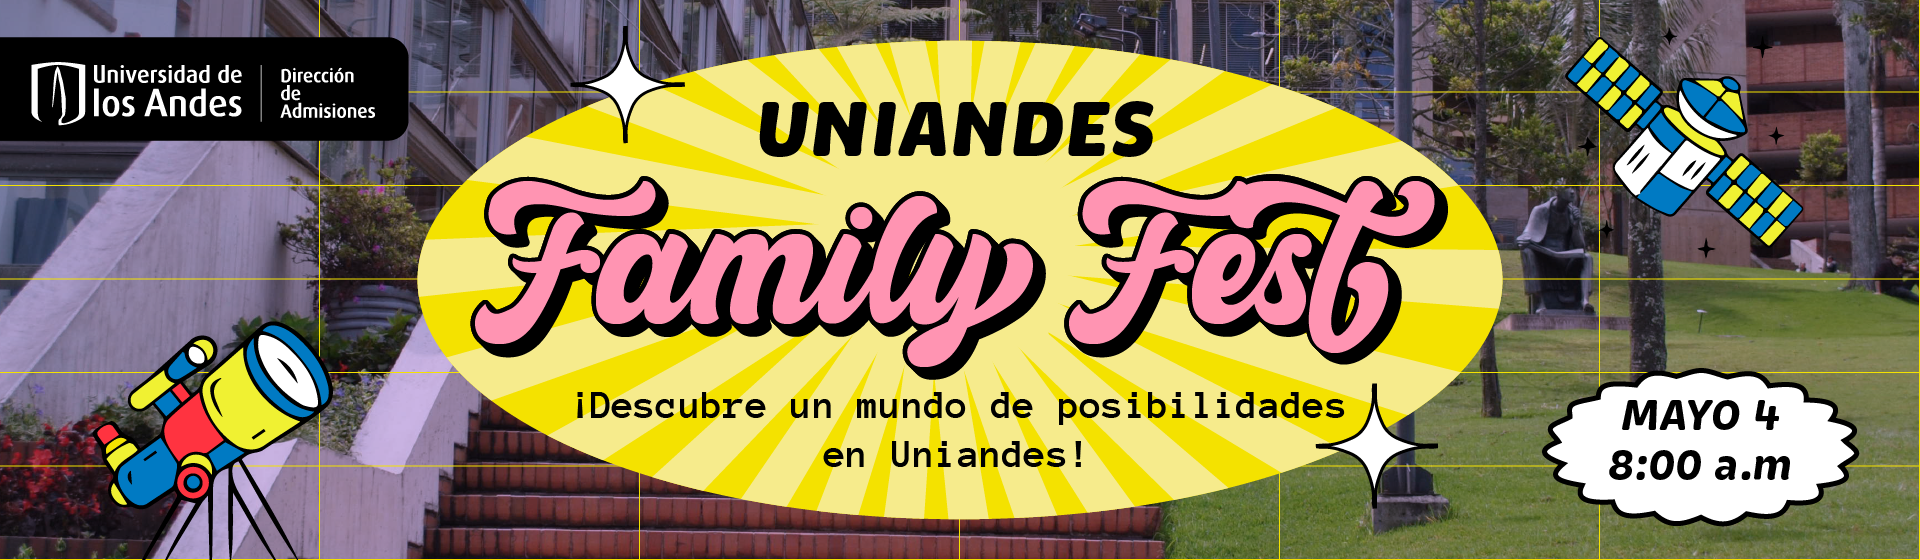 Uniandes Family Fest